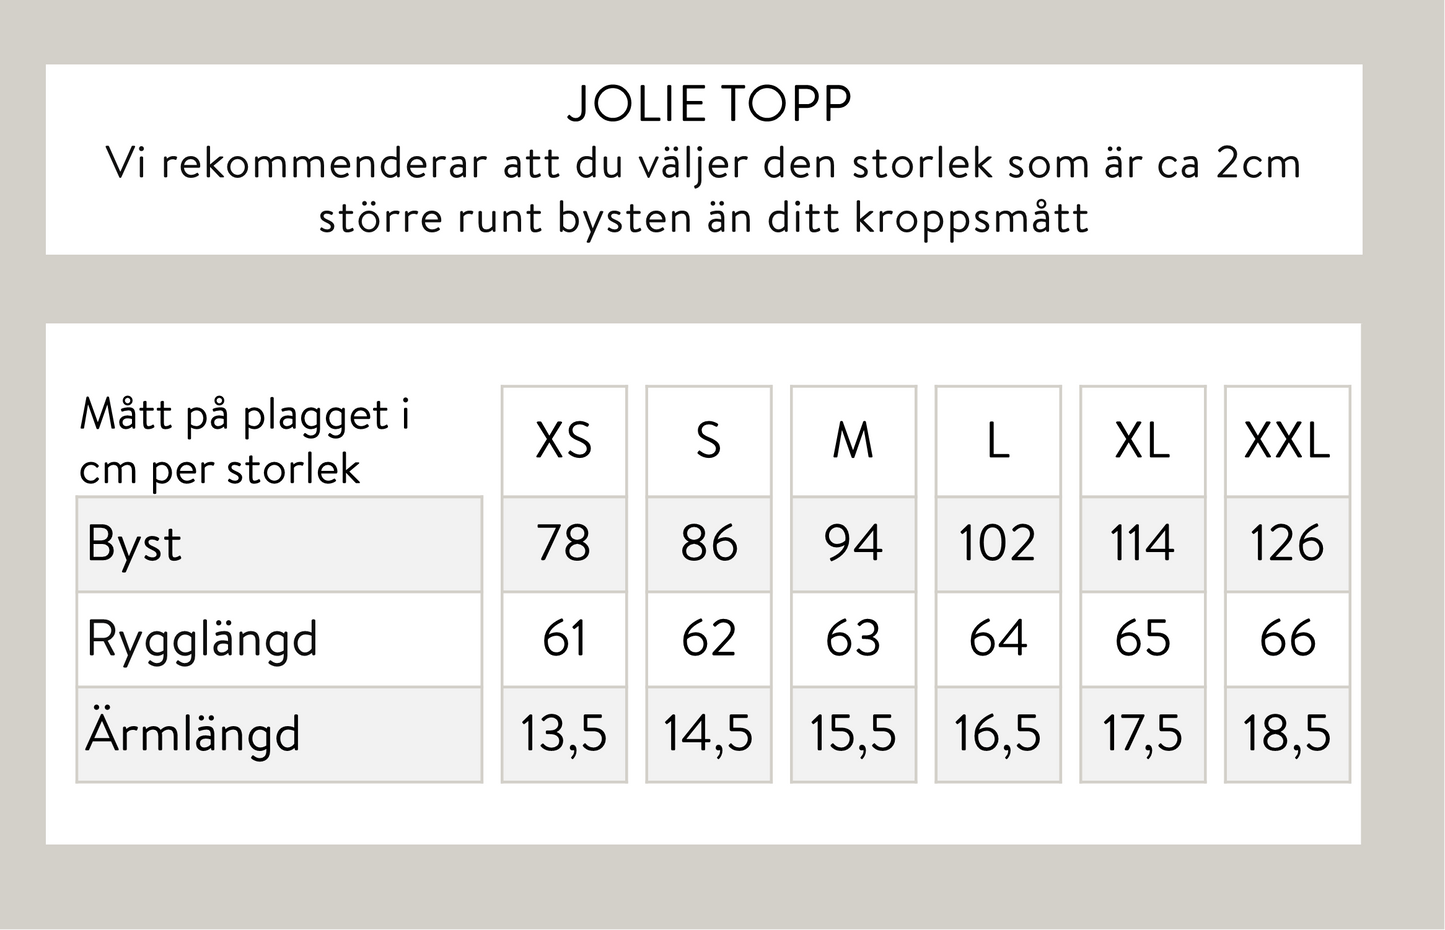 Jolie topp - Offwhite